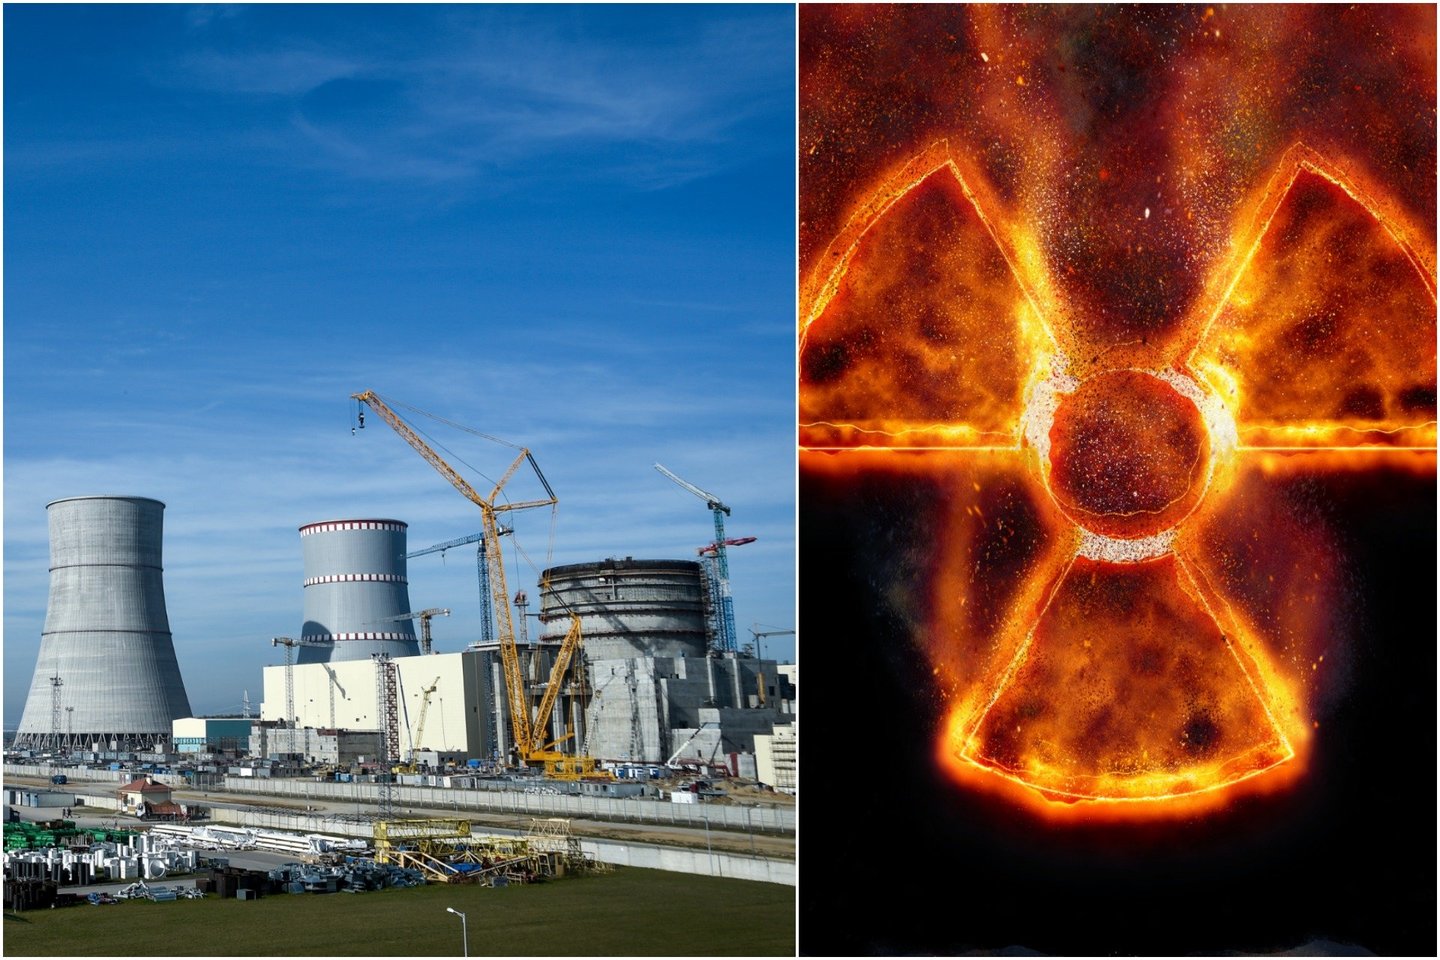  Aptarti apšvitos keliami pavojai sveikatai, gyventojų perspėjimas ir informavimas bei skubūs veiksmai, kuriuos pirmiausiai reikėtų atlikti įvykus branduolinei avarijai.<br> V. Ščiavinsko nuotr. / 123RF iliustr.